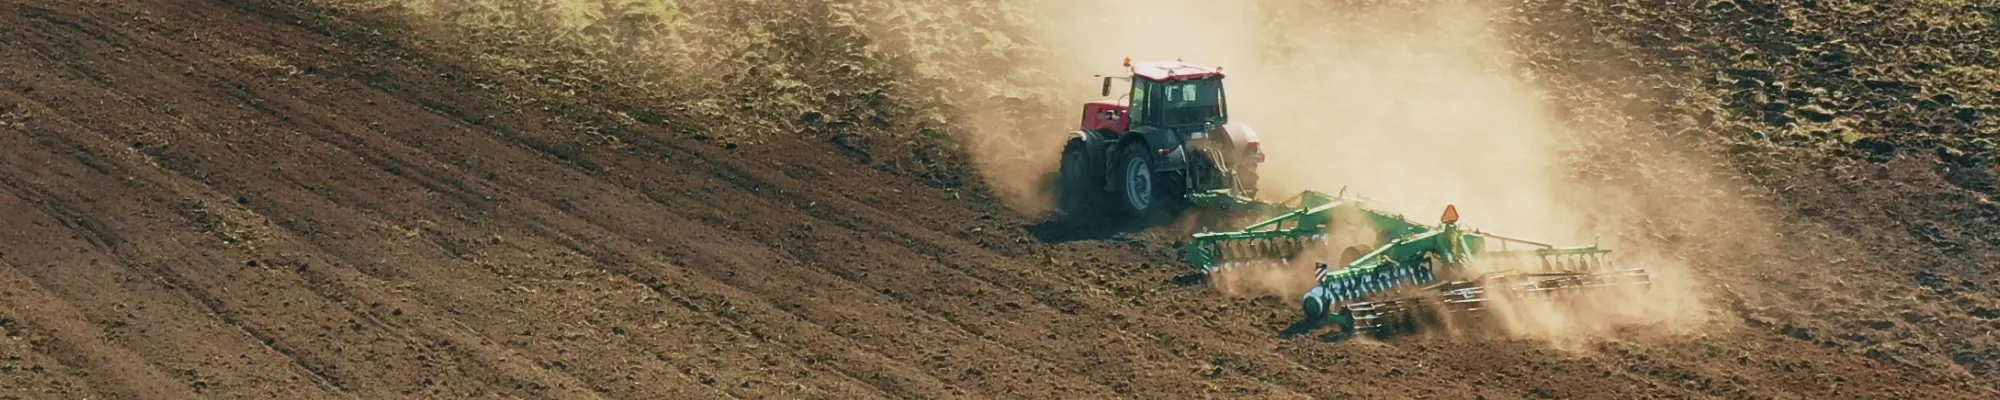 Tracteur en action dans les champs - Promotion de l'agriculture éco-consciente avec le World Climate Farm Tool pour le bilan climatique